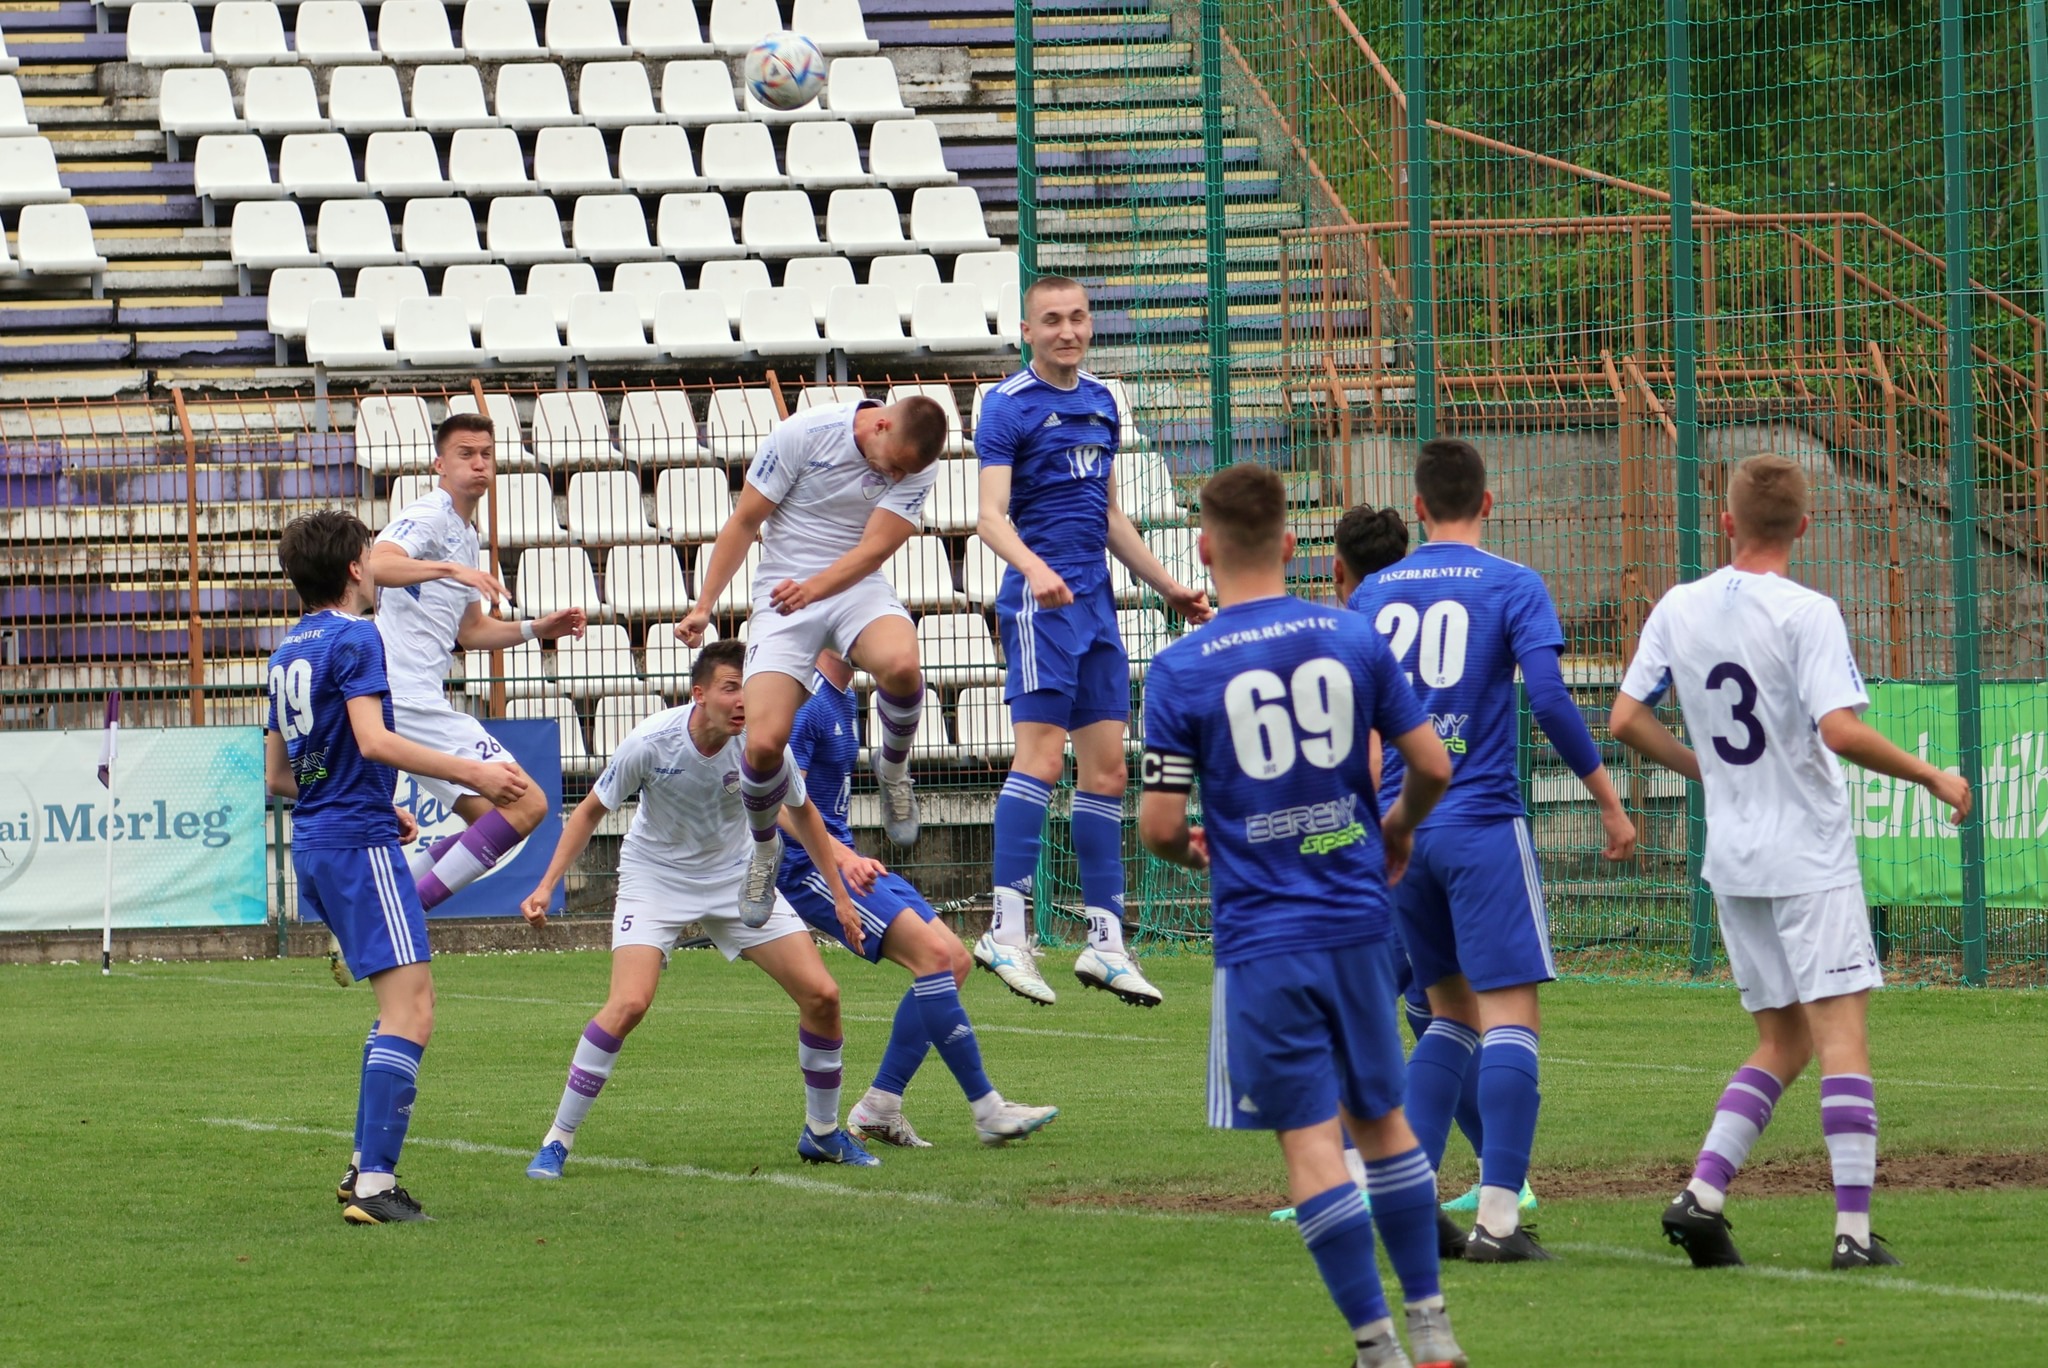 Békéscsaba 1912 Előre II. - Jászberényi FC 6-2 (1-1)